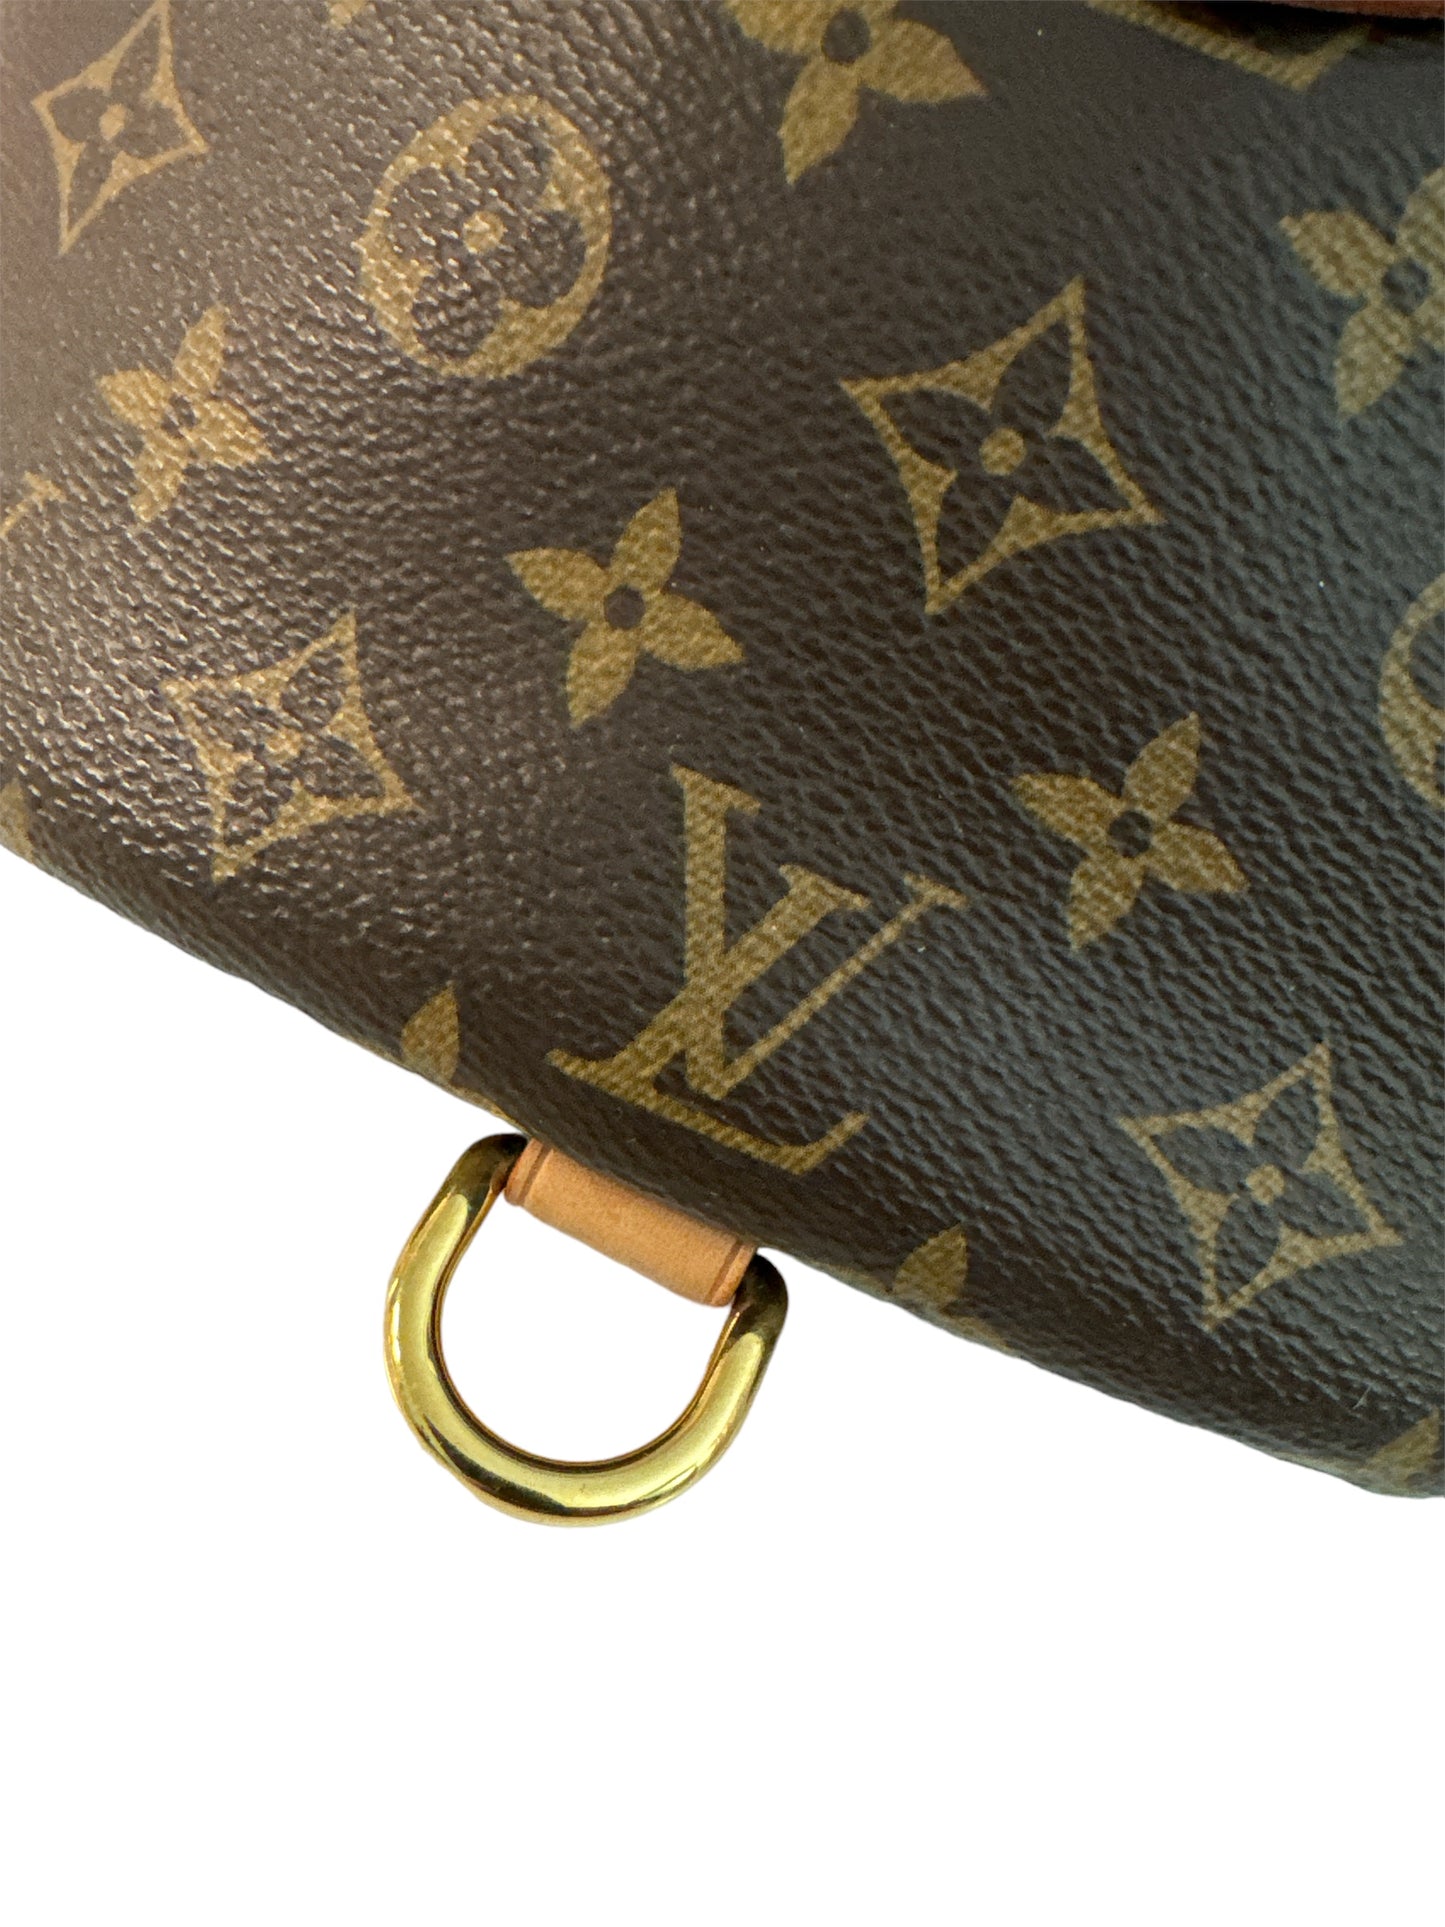 Louis Vuitton Bumbag Monogram Bag